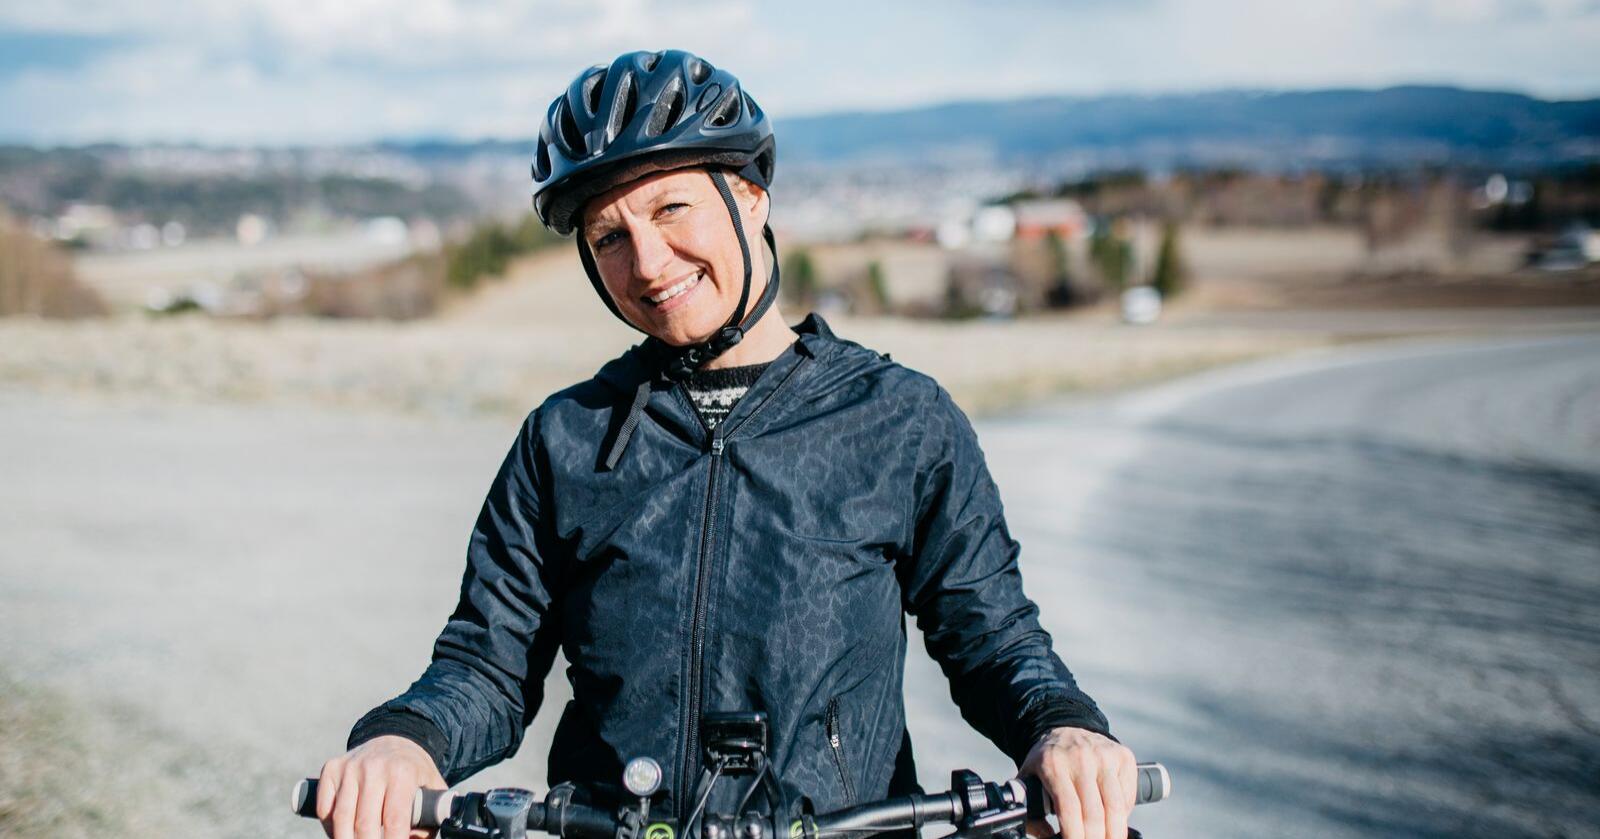 Sykkeltur med mening: Her er Stina Isabel Almli Pettersen Nordine, som denne sommeren sykler Norge på langs for å rette oppmerksomhet mot organdonasjon. Skribent Maria Almli har kjørt følgebobilen hennes. Foto: Karoline O. A. Pettersen